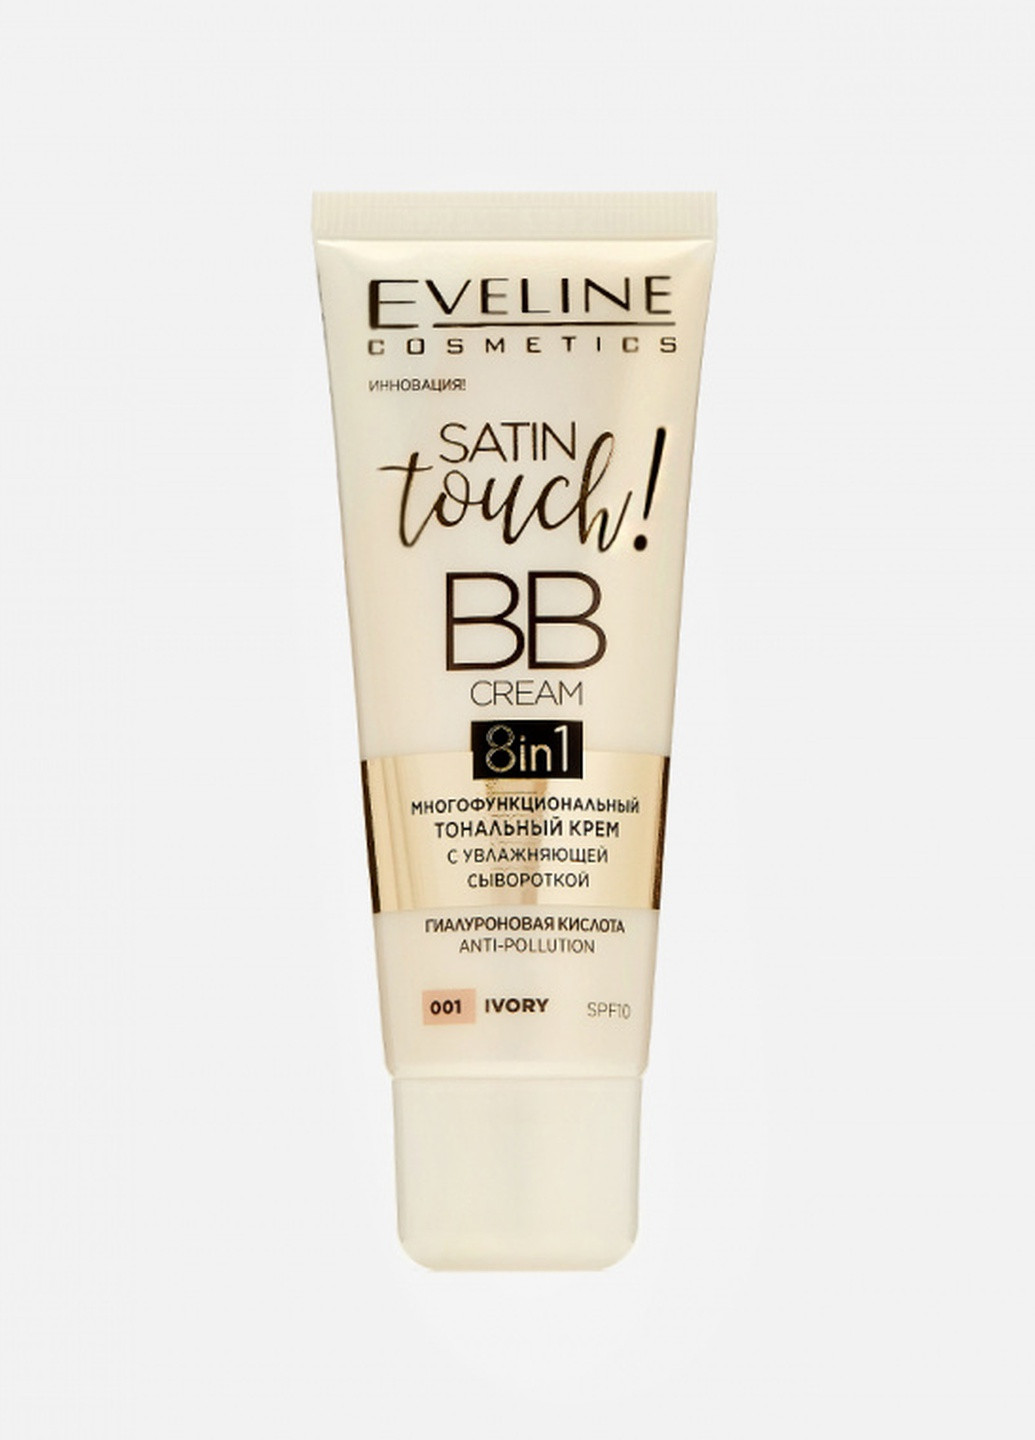 Тональний крем eveline satin touch bb cream 8in1, тон 002 beige, 30мл Eveline Cosmetics 5903416029144 (256107103)